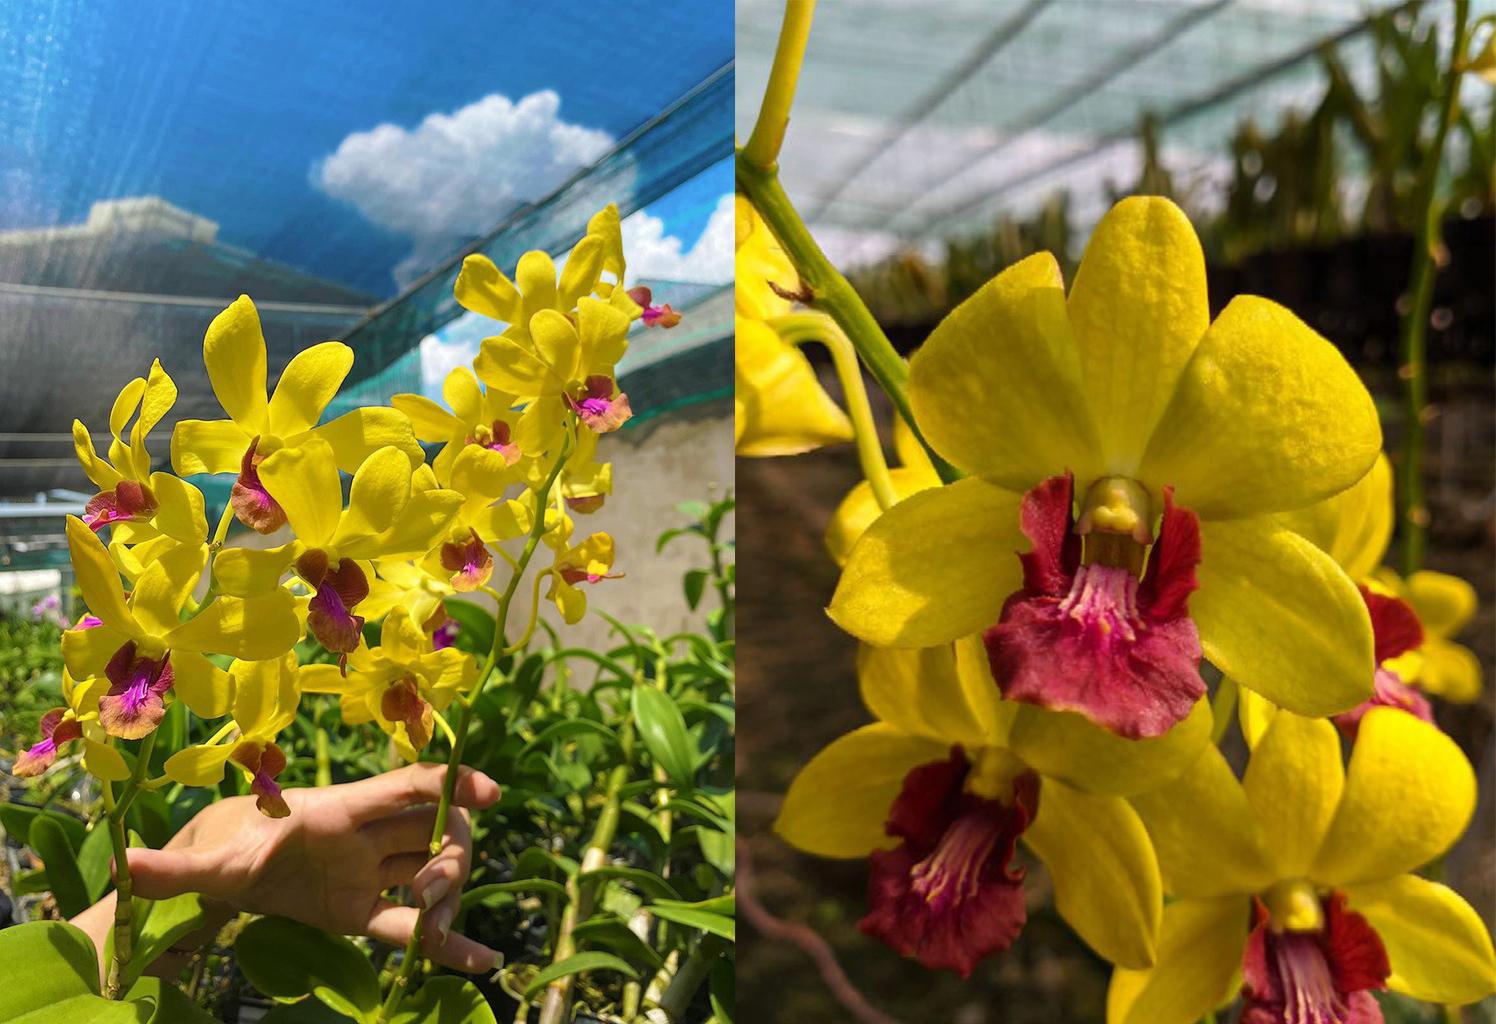 Lan dendro - Phân loại, cách trồng và chăm sóc cho hoa quanh năm - 15